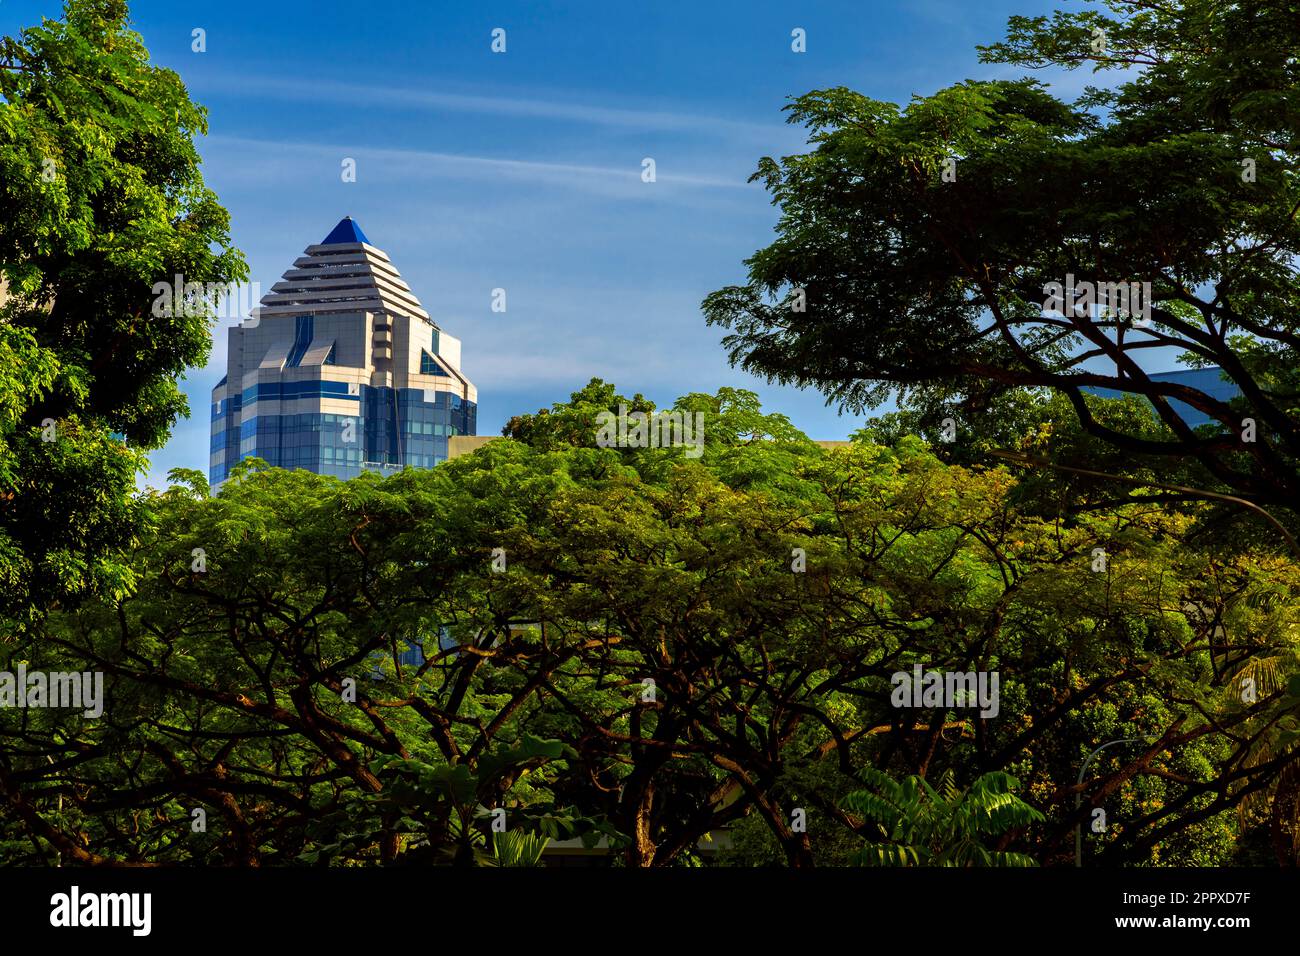 Singapore cityscape. Skyscraper rises above treetops. Stock Photo